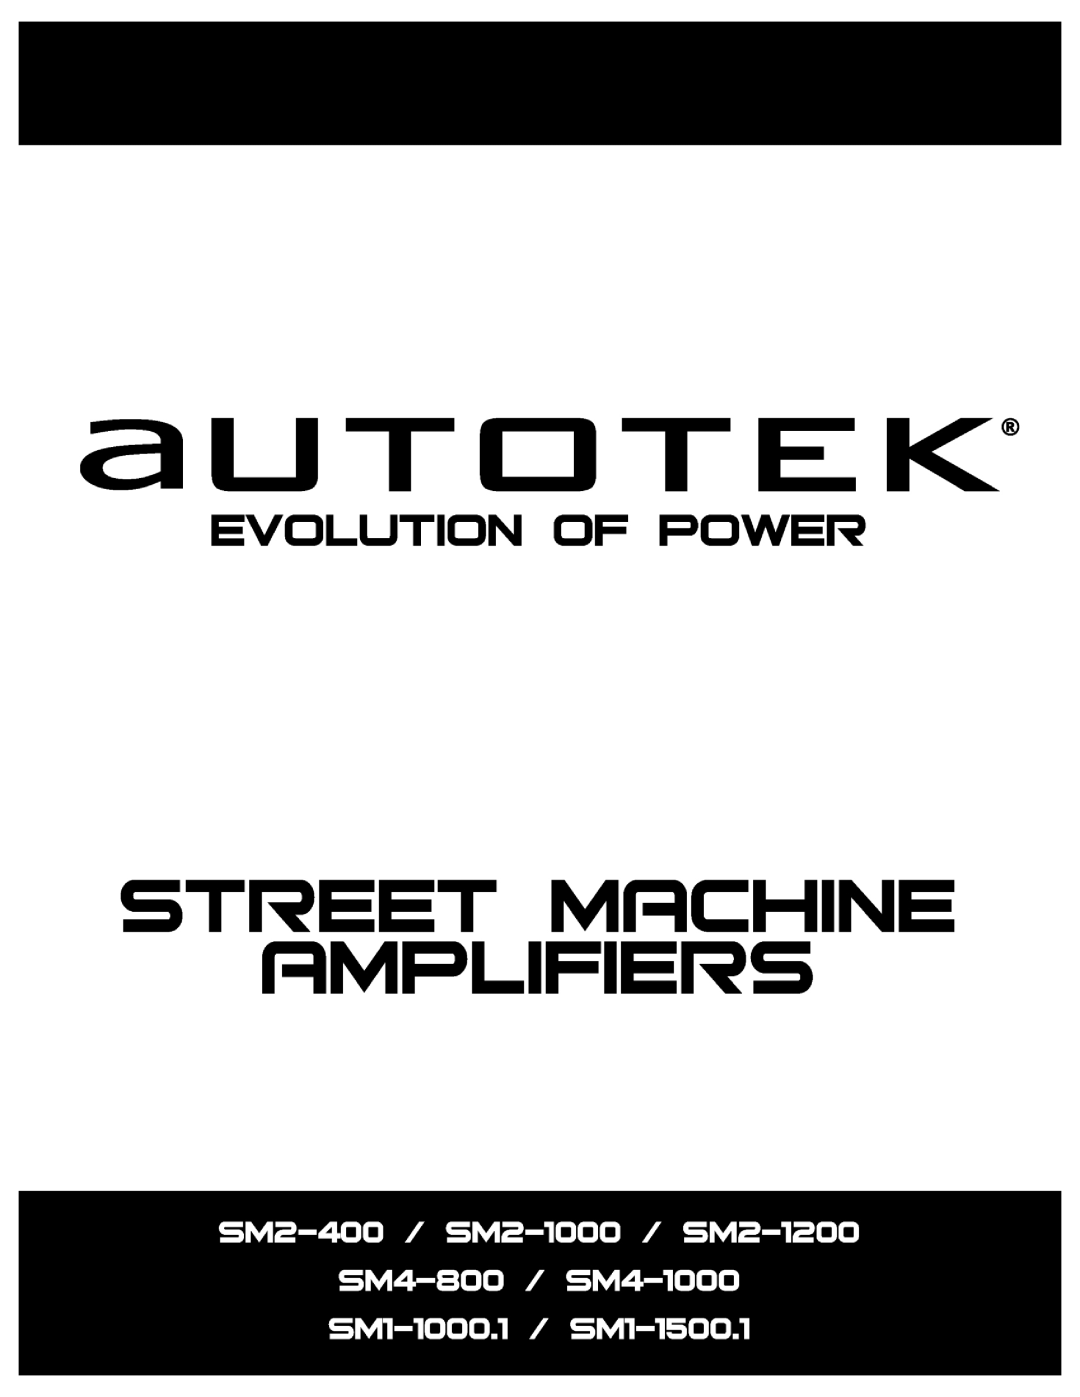 AutoTek SM2-1000, SM4-800, SM2-1200, SM4-1000, SM2-400, SM1-150.1, SM1-100.1 manual 